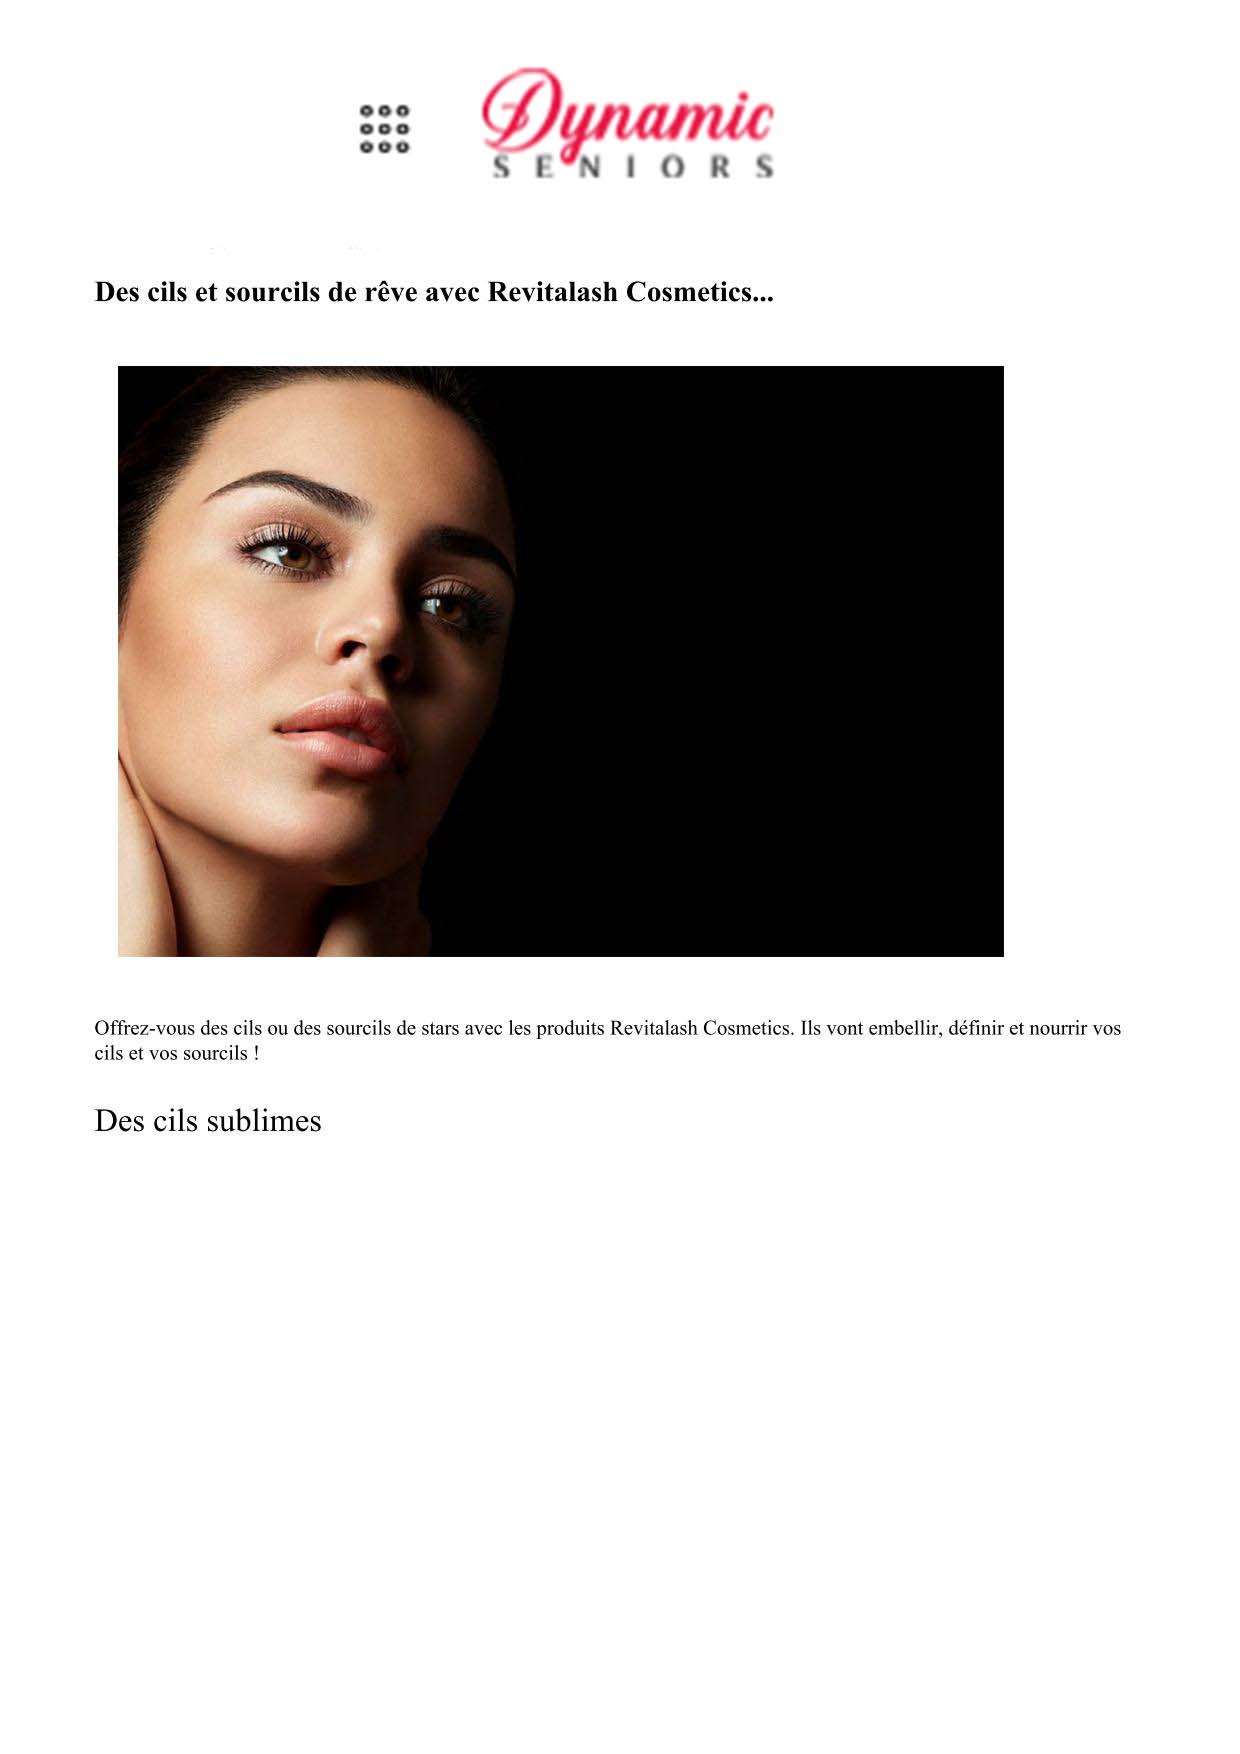 RevitaLash® Cosmetics : des actifs cosmétiques de pointe